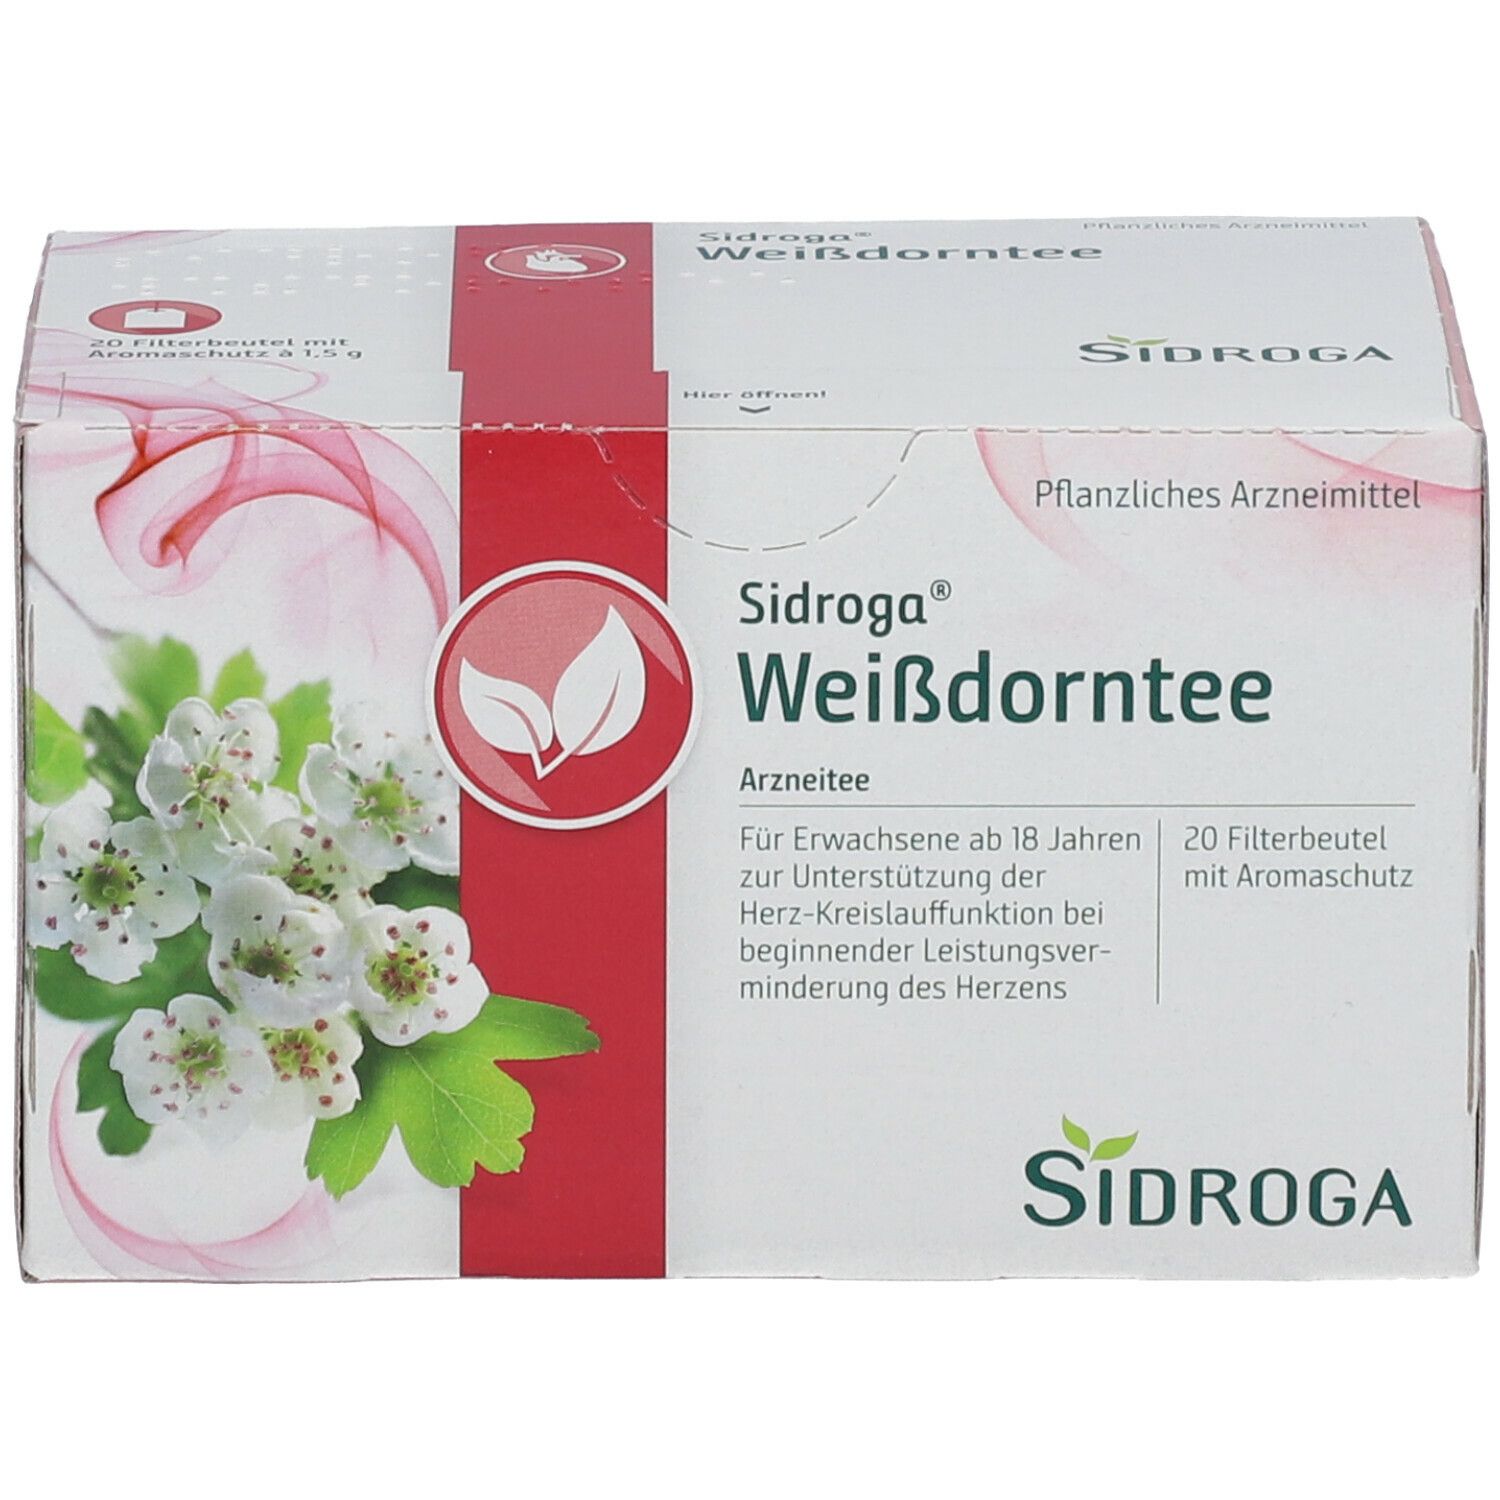 Sidroga® Weißdorntee